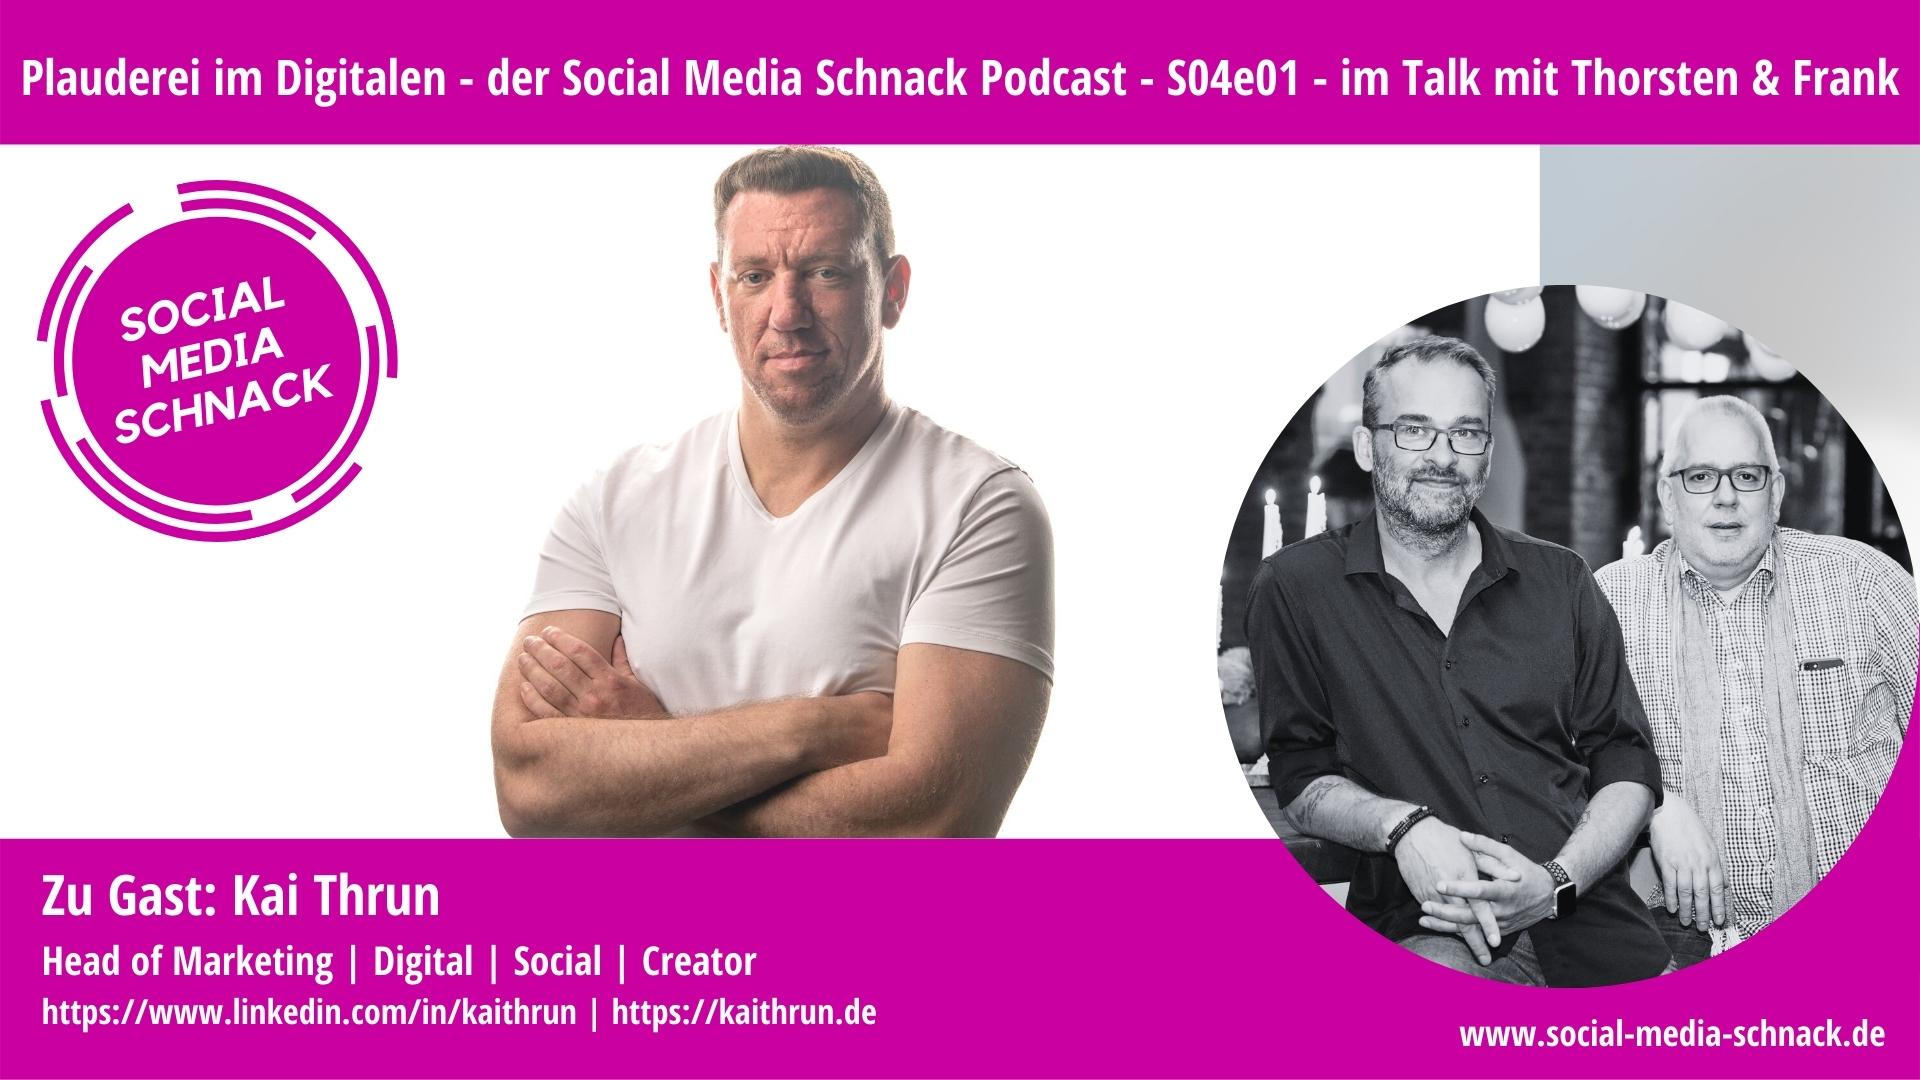 Social Media Schnack -im Gespräch mit Kai Thrun, Blogger, Creator, Marketingsspezialist